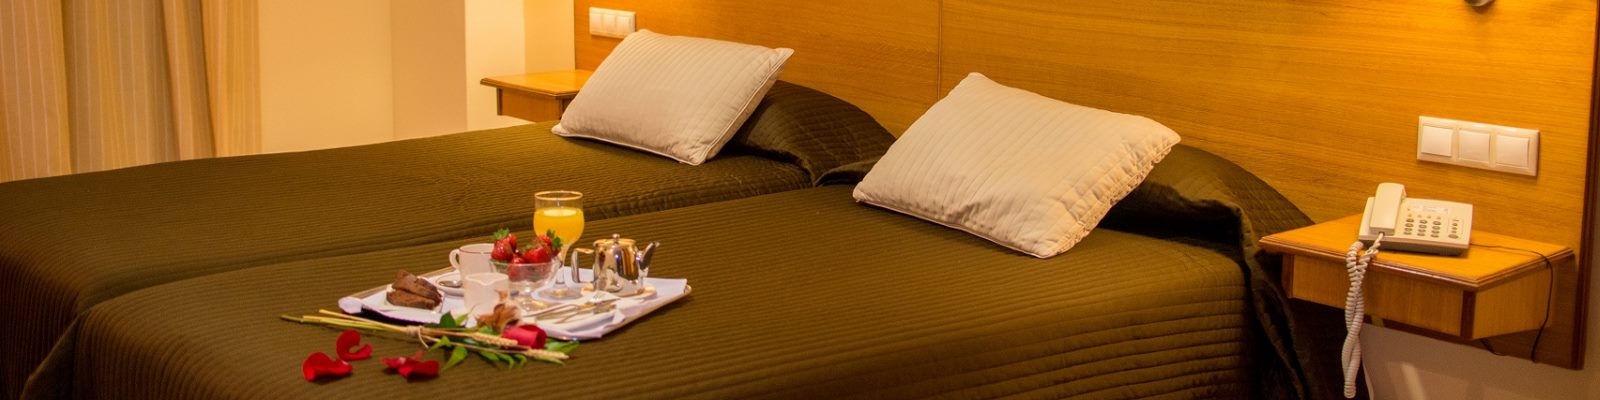 Escapada barata Hotel con opción de spa (Medina Sidonia - CADIZ)